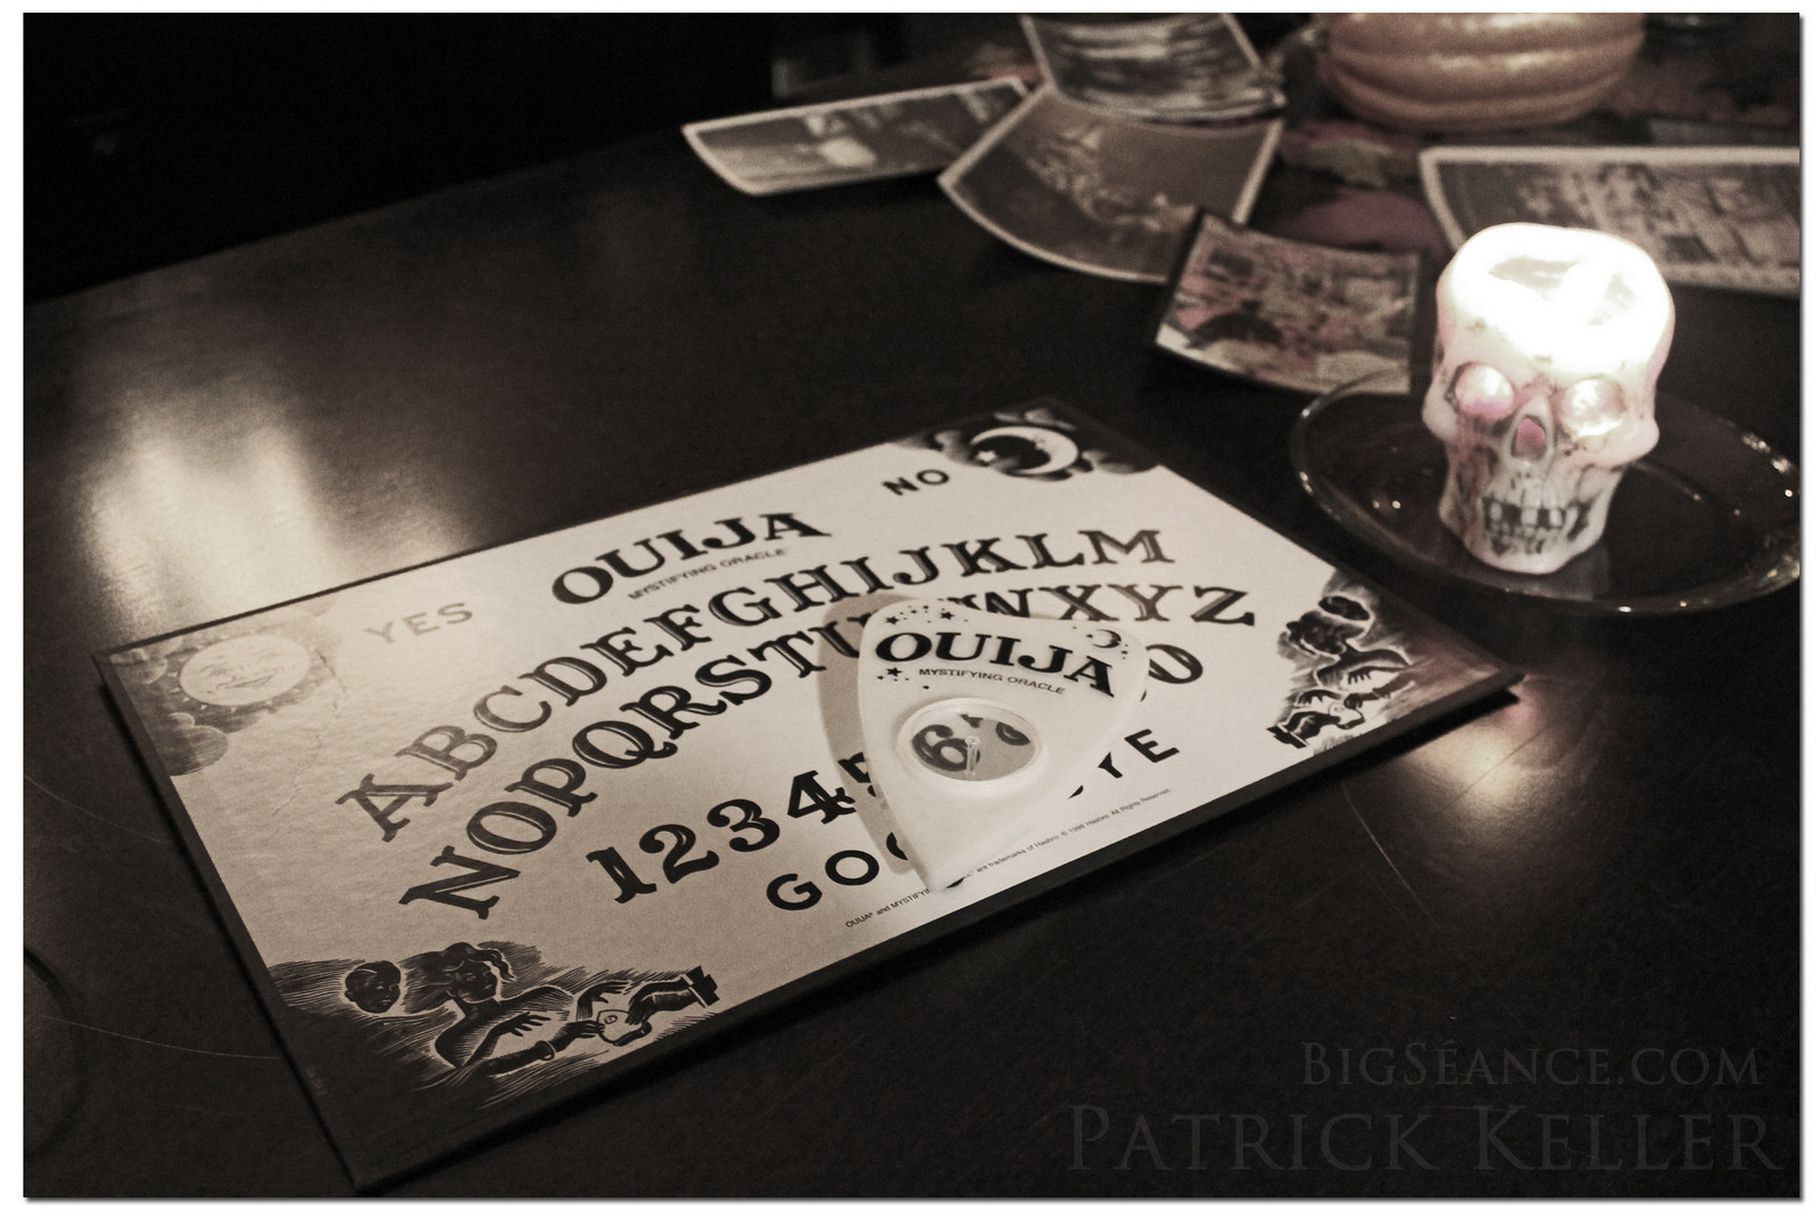 The Ouija Board.